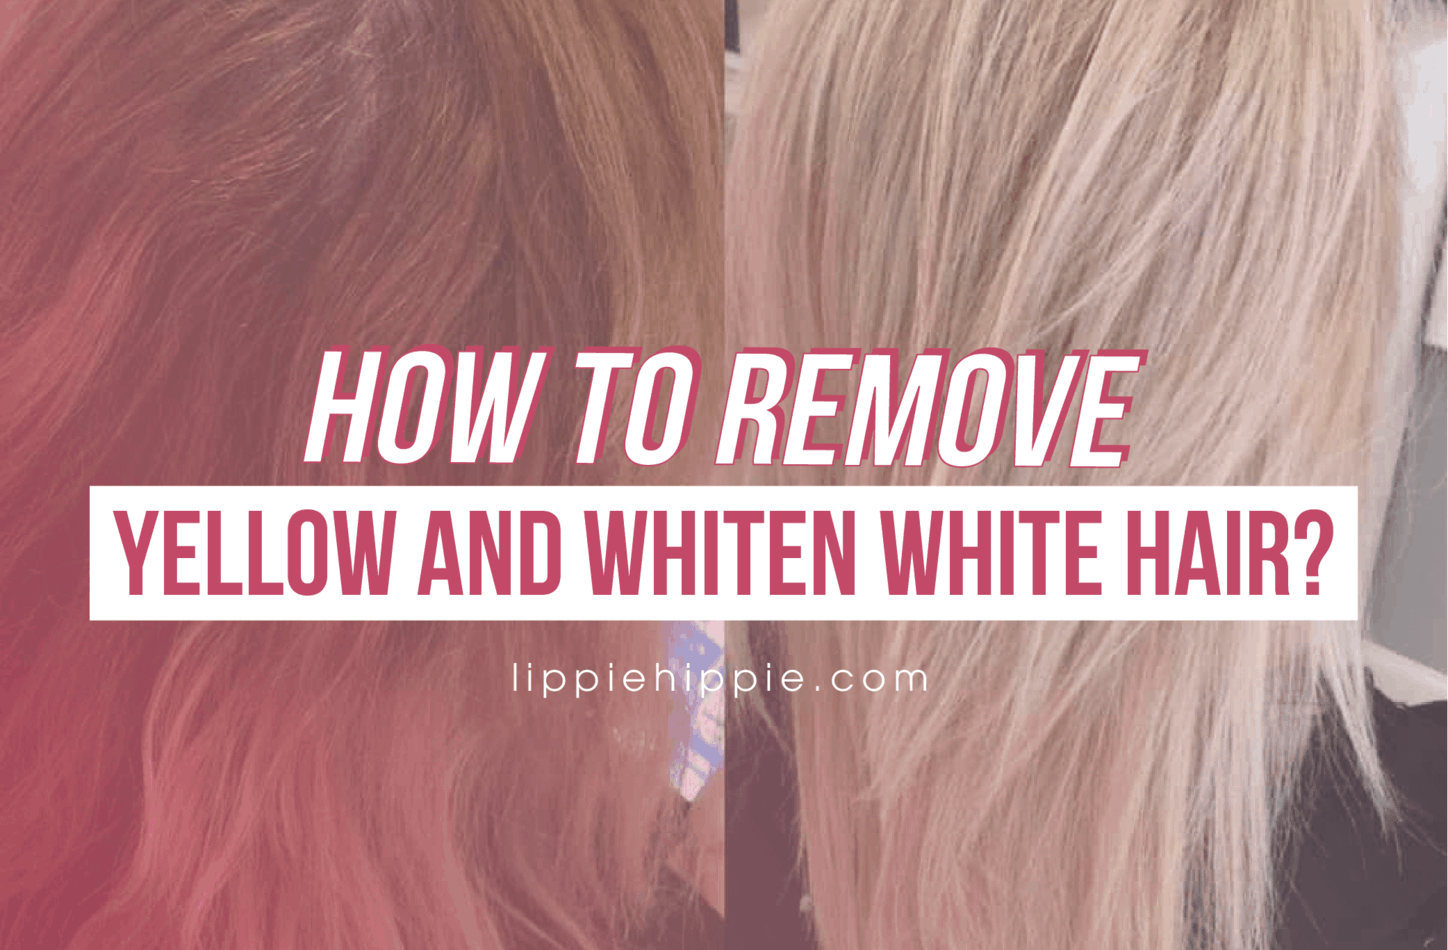 How To Whiten White Hair - Remove Yellow?